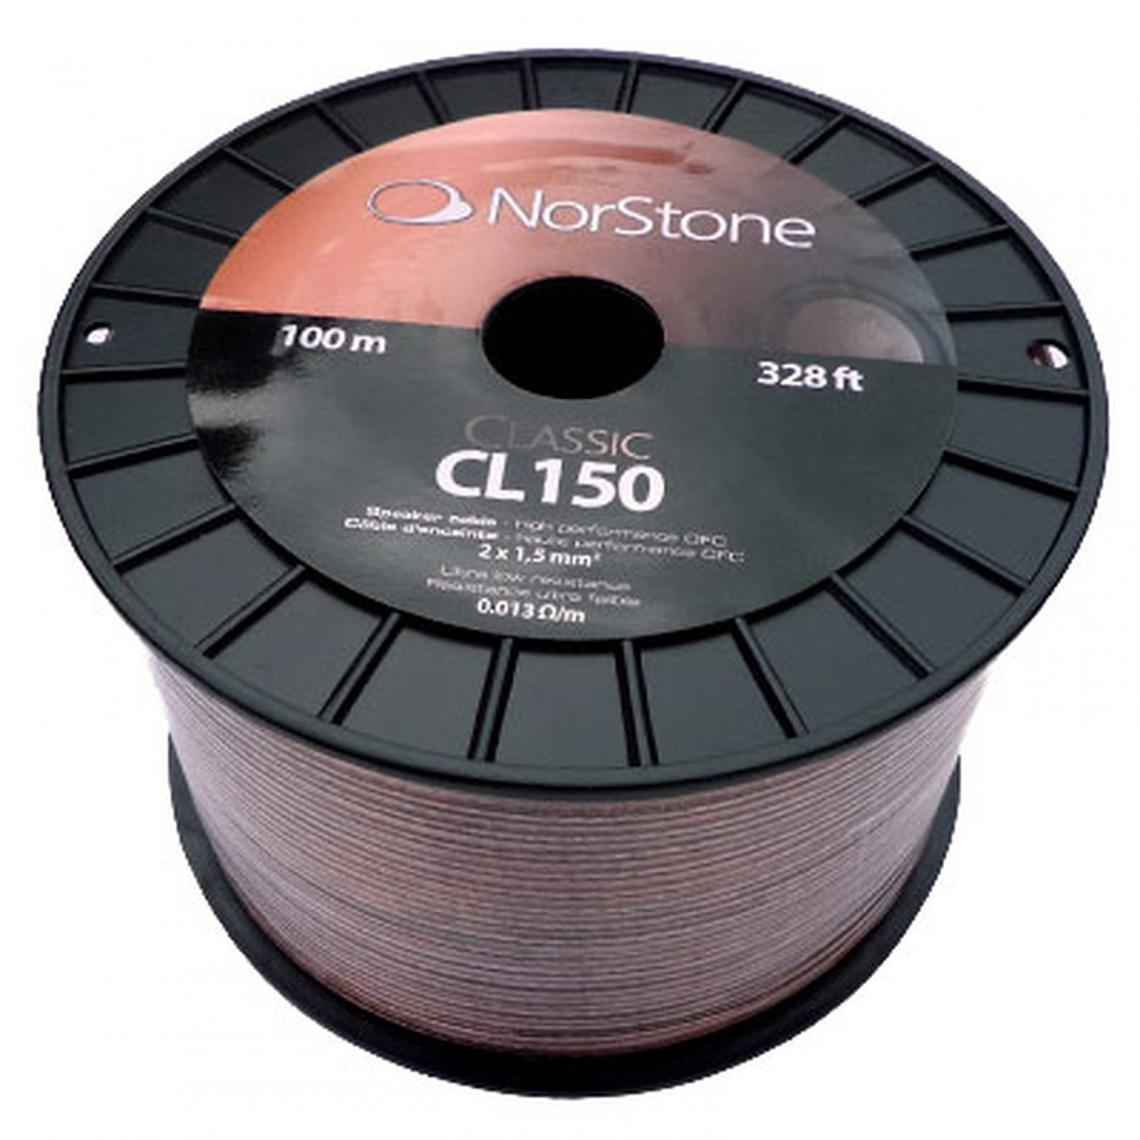 Norstone - Classic 150 - Accessoires Téléphone Fixe